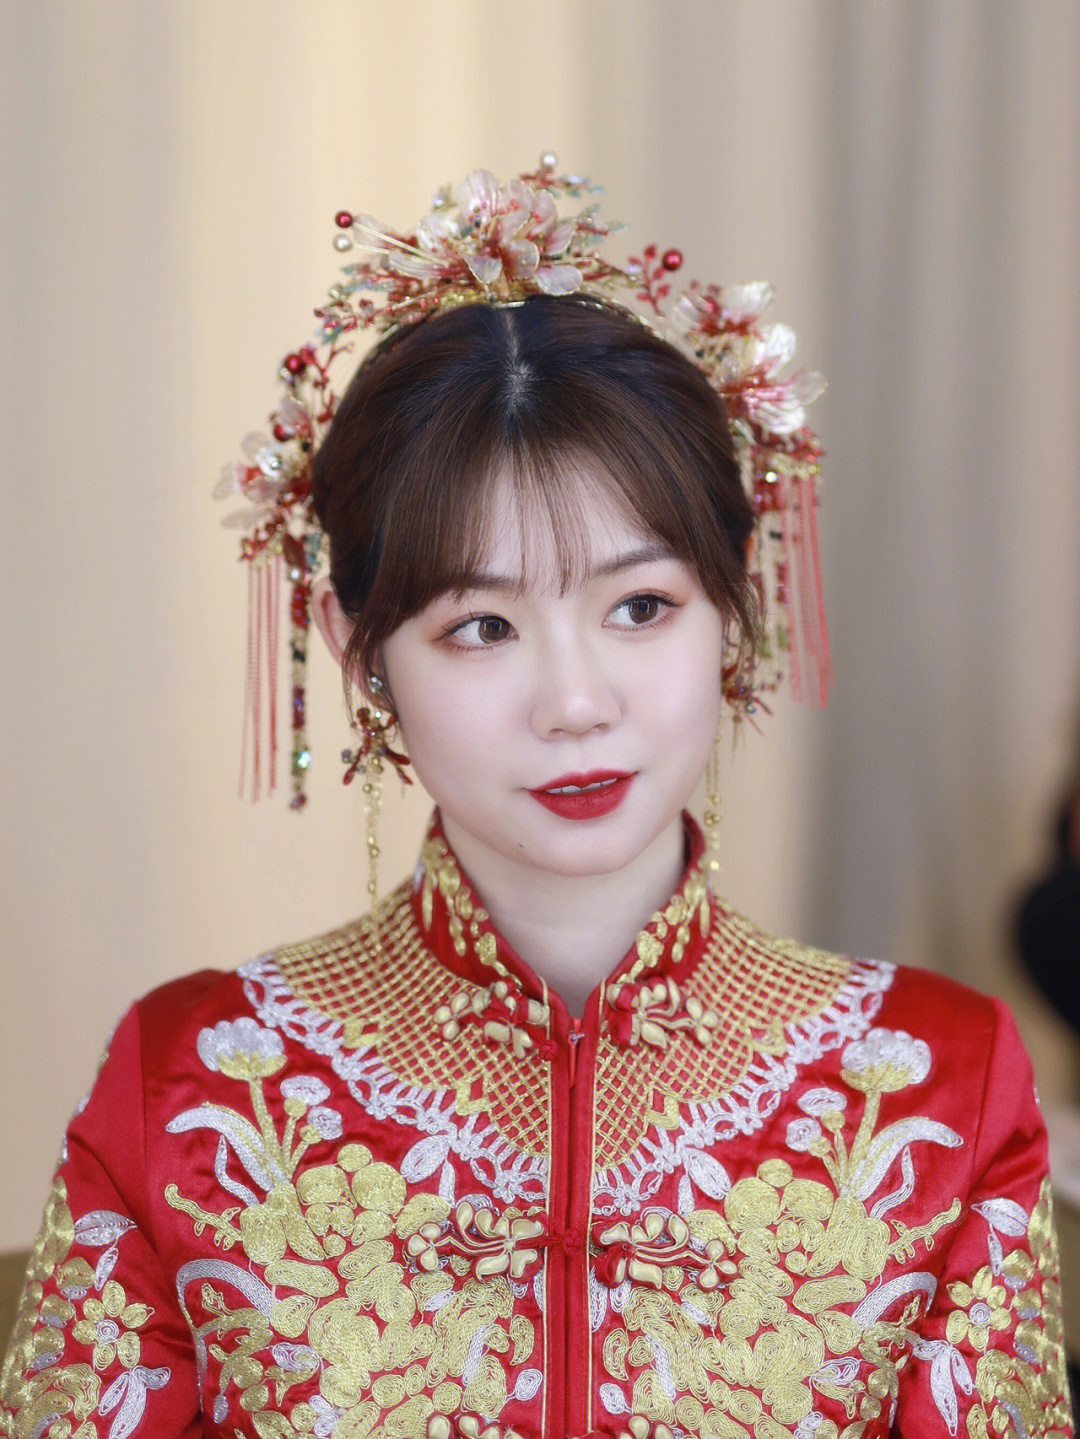 中式新娘造型两款秀禾发型对比